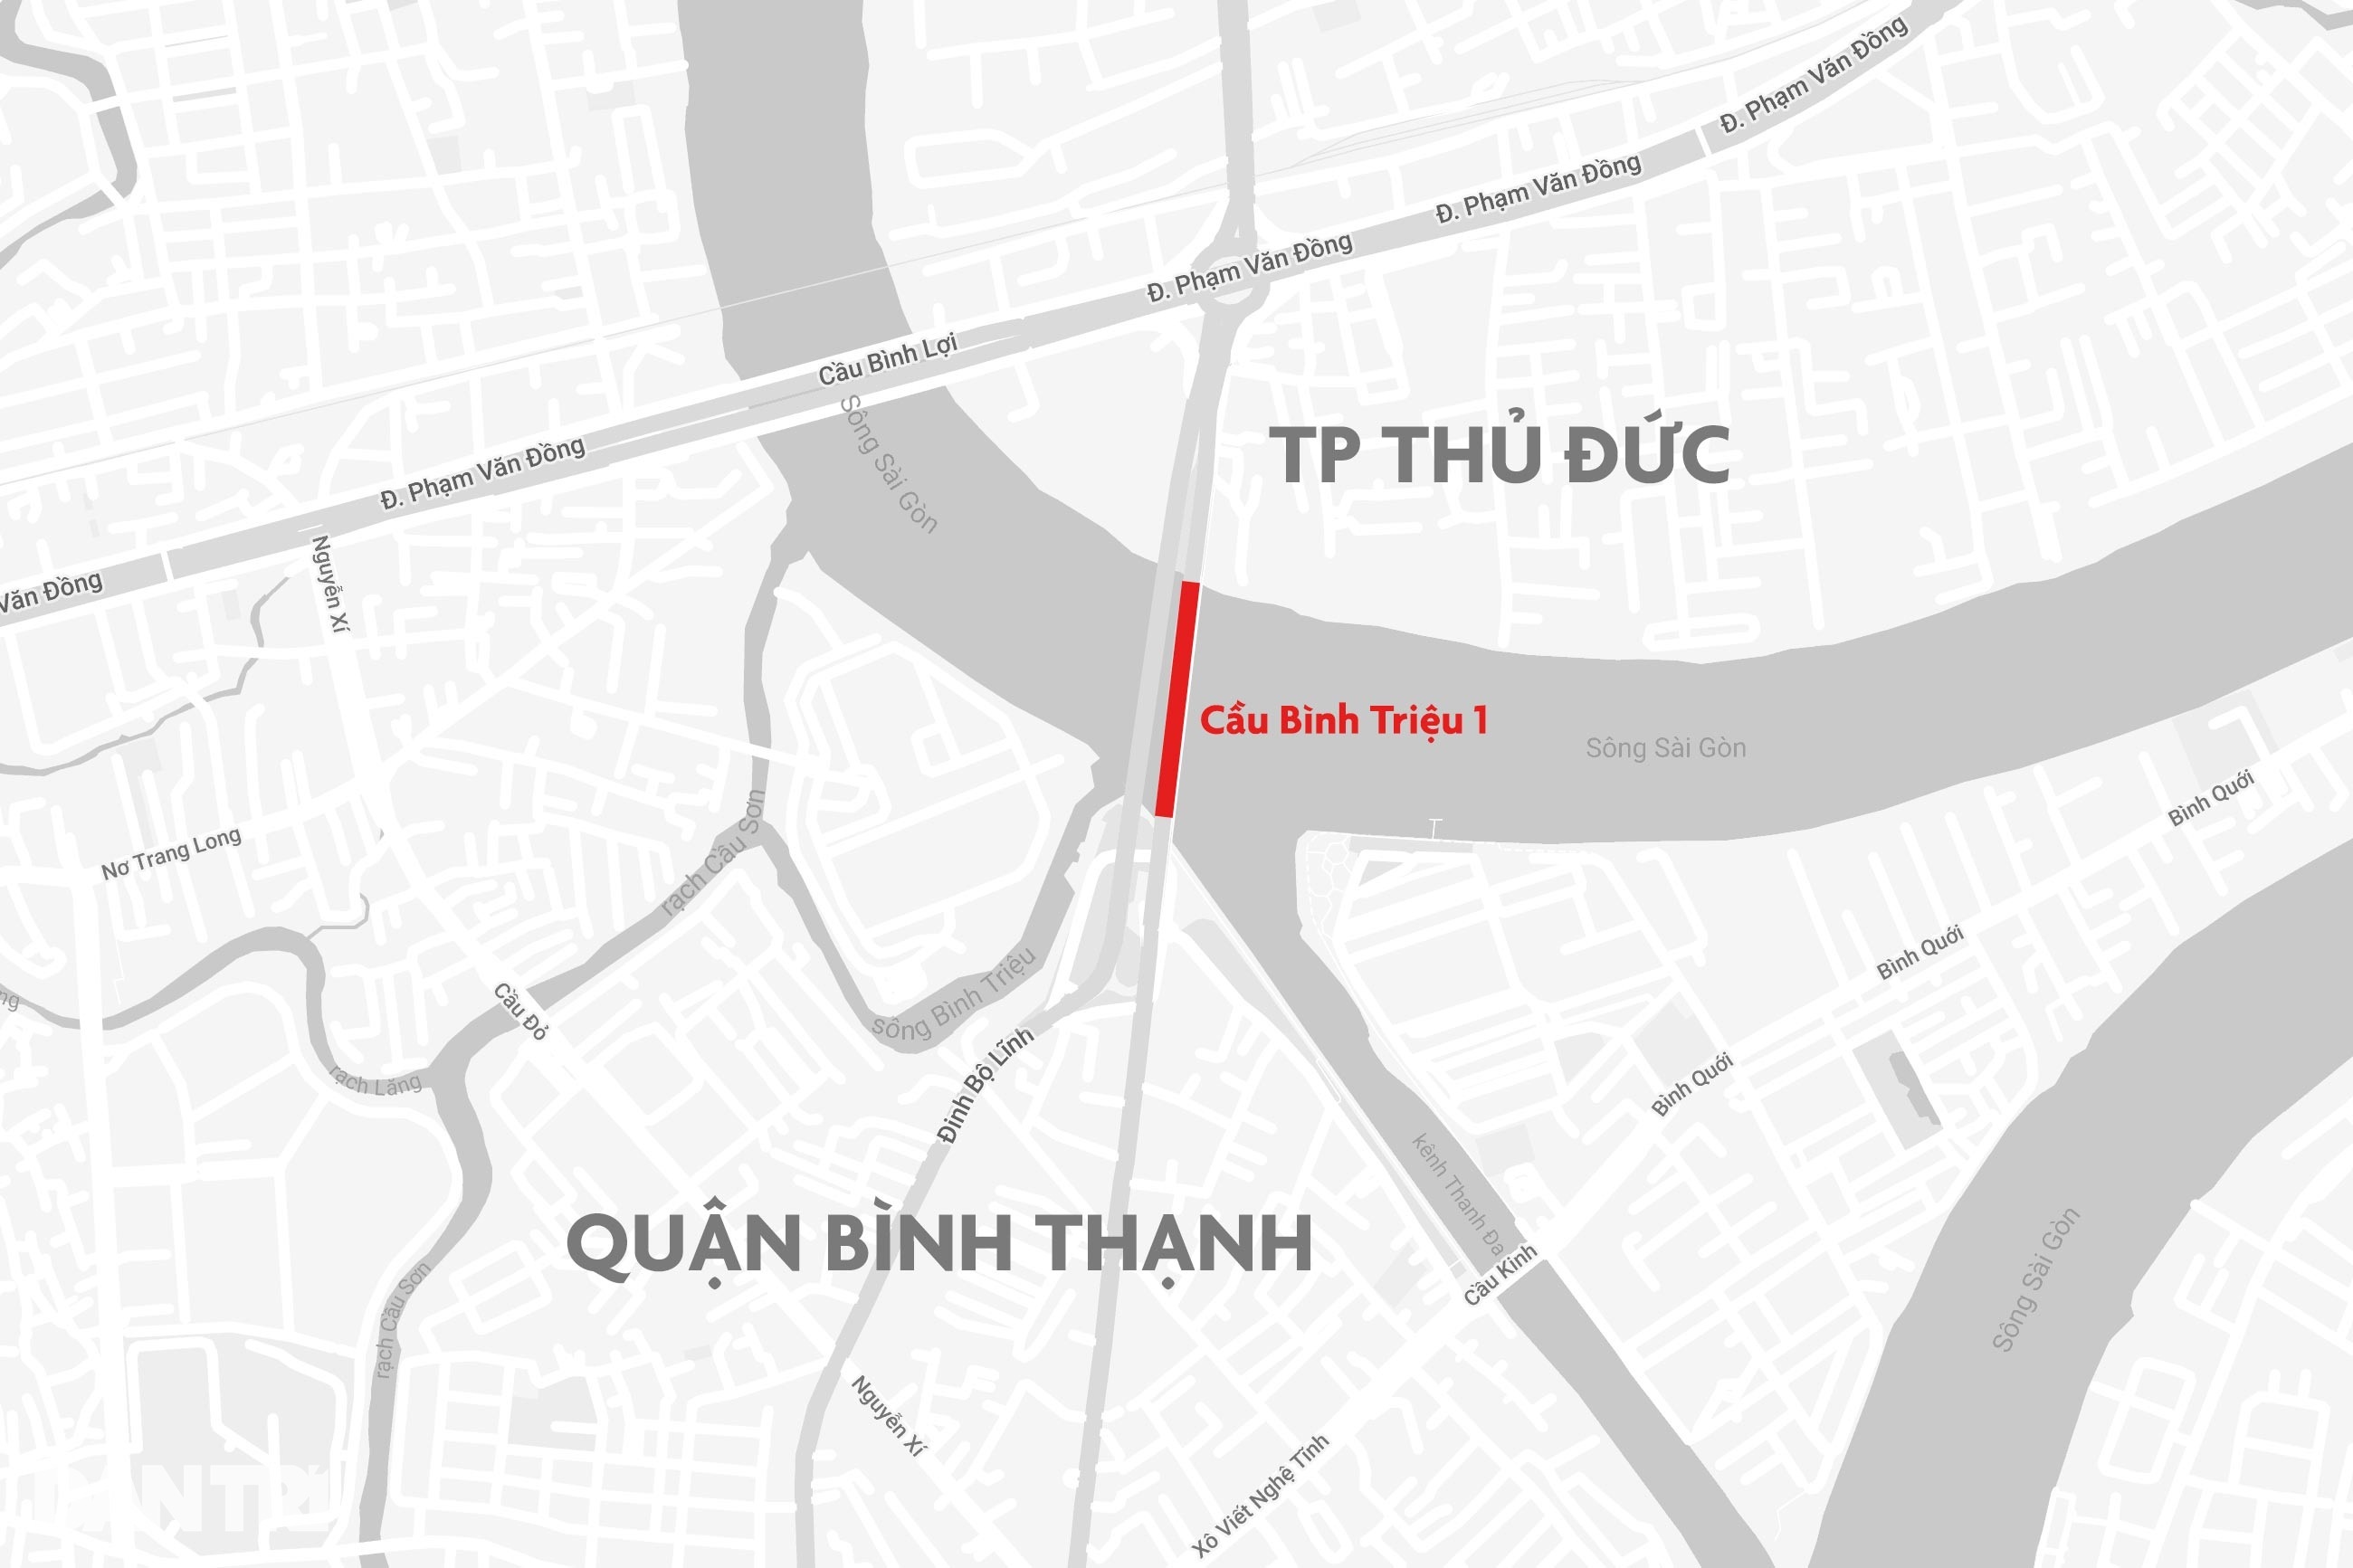 Nâng độ cao 2 cây cầu bắc qua sông Sài Gòn với 244 tỷ đồng - 2